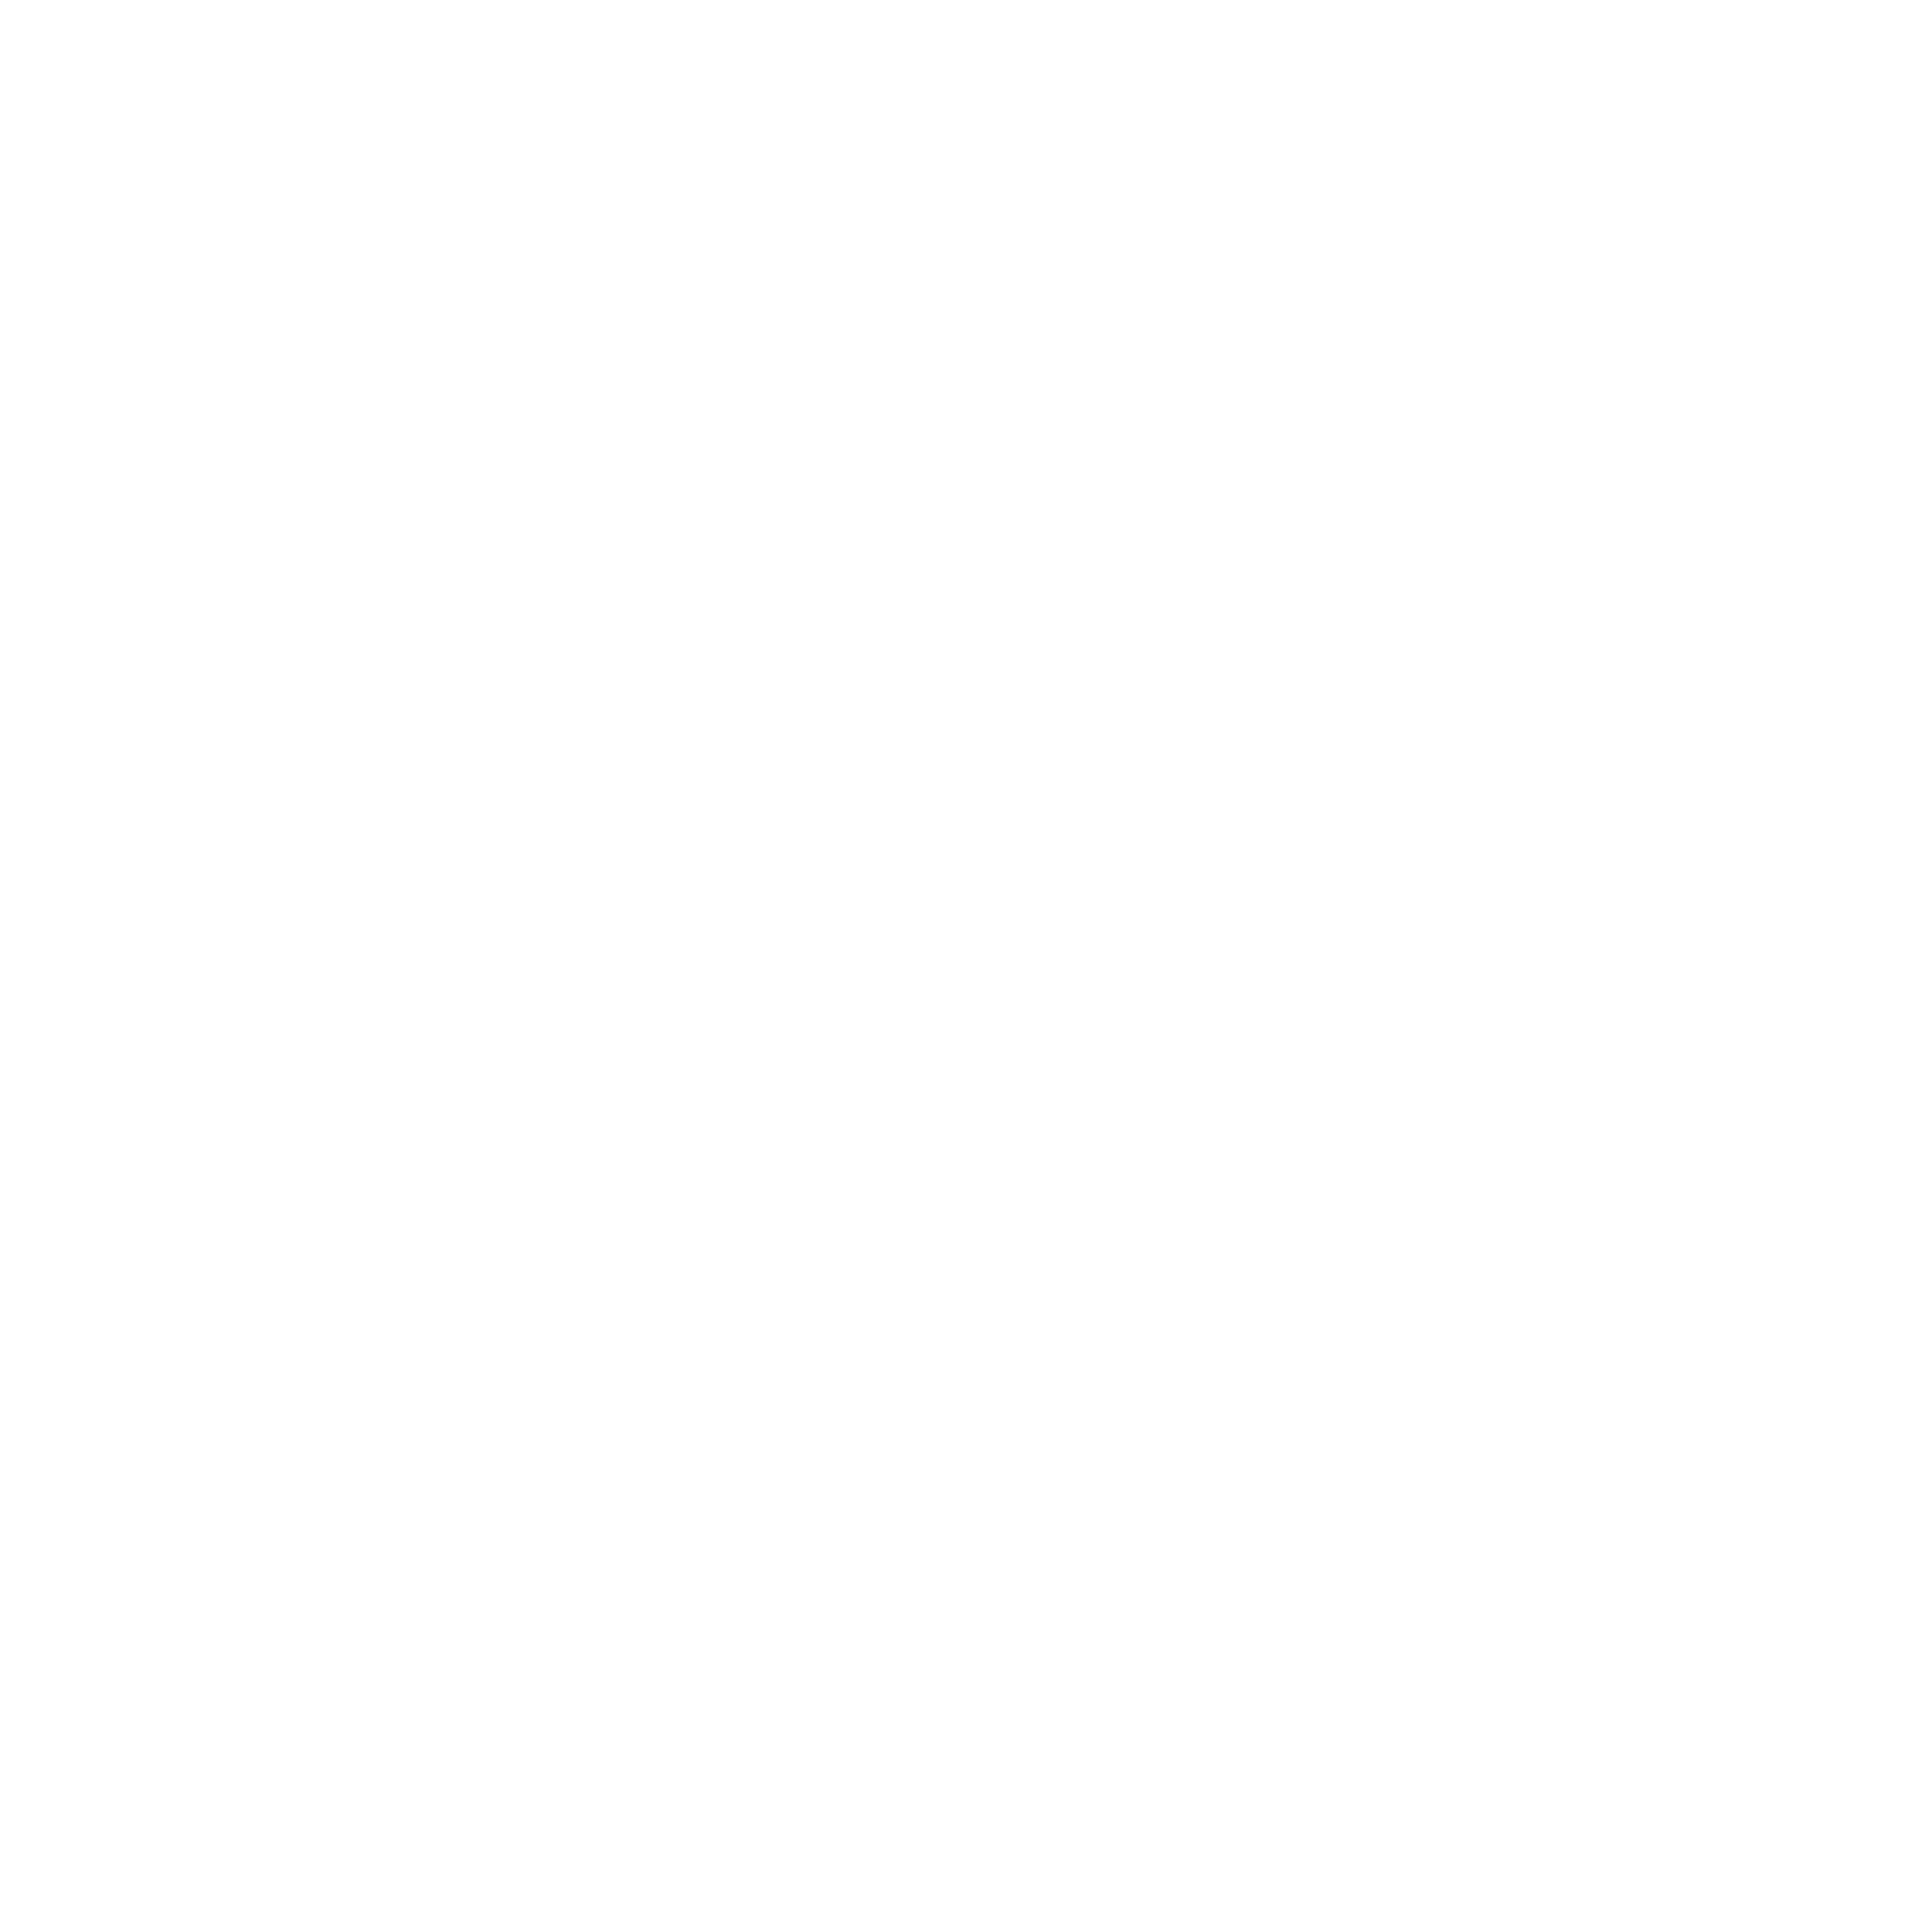 Give It Beauty